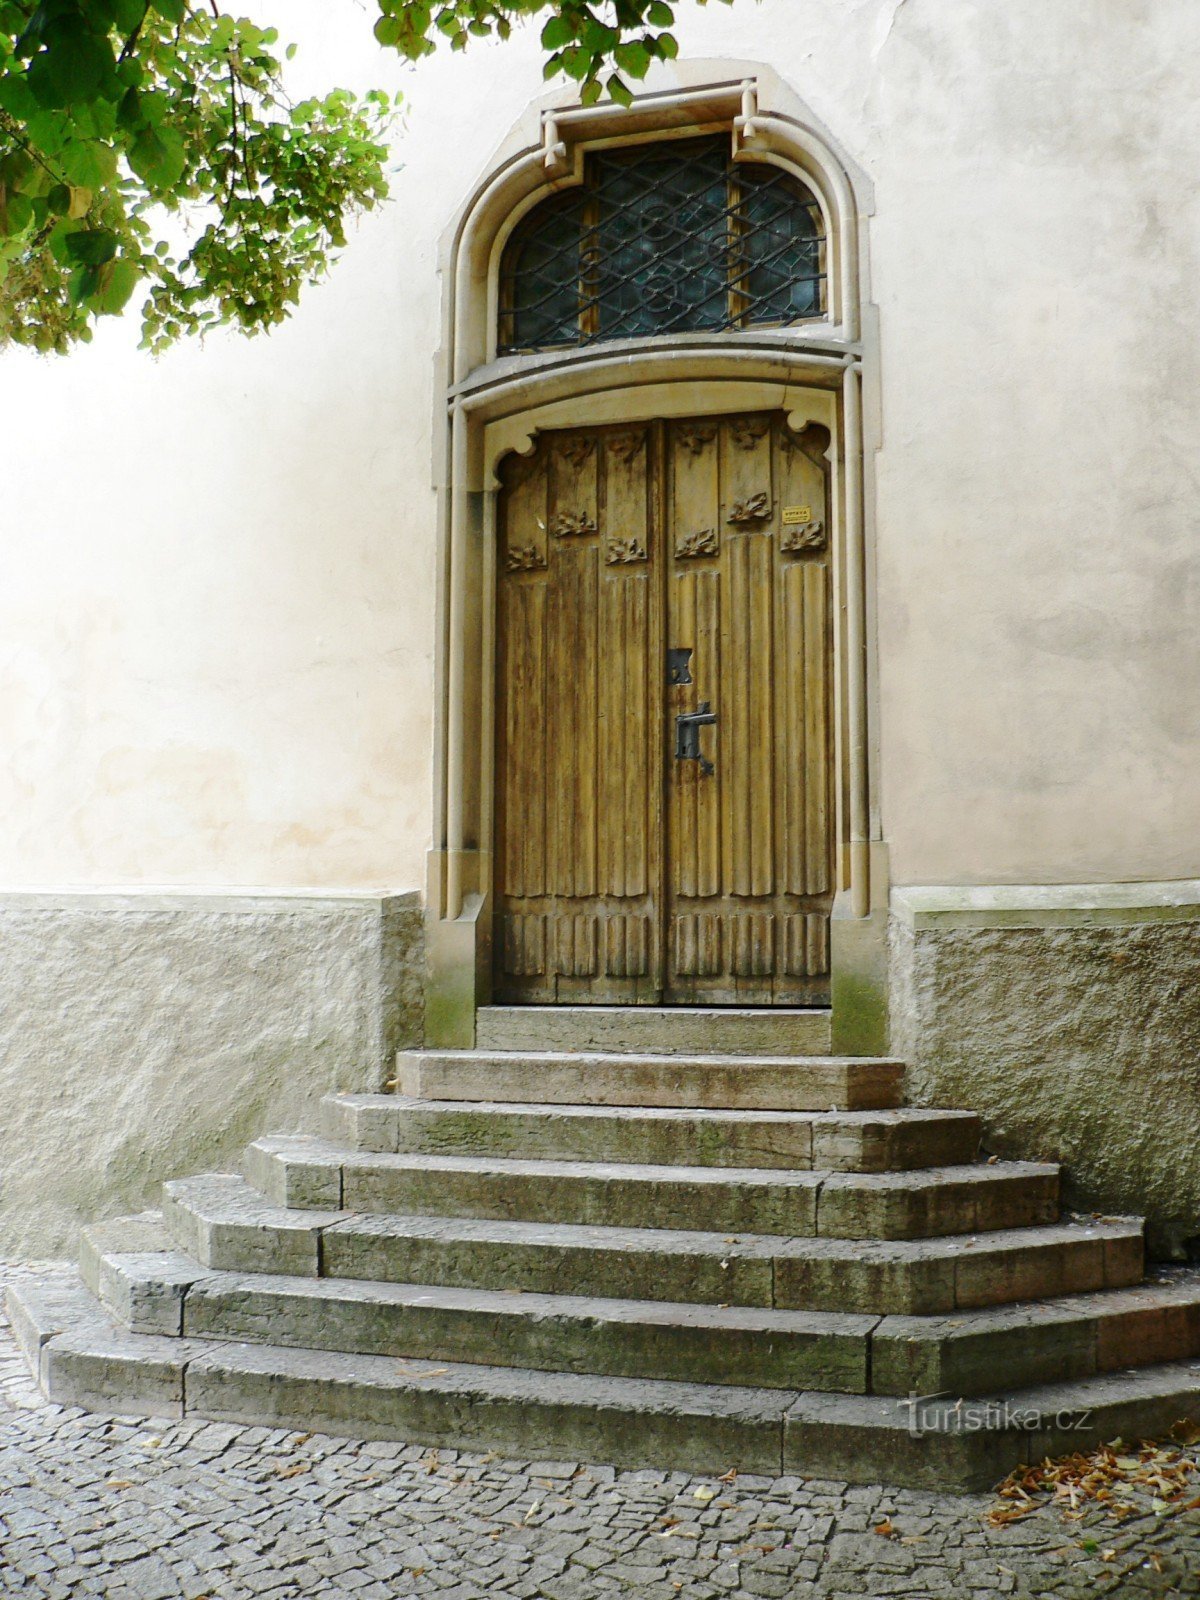 によると、1901年以降に新しく開かれた教会の聖具室への入り口